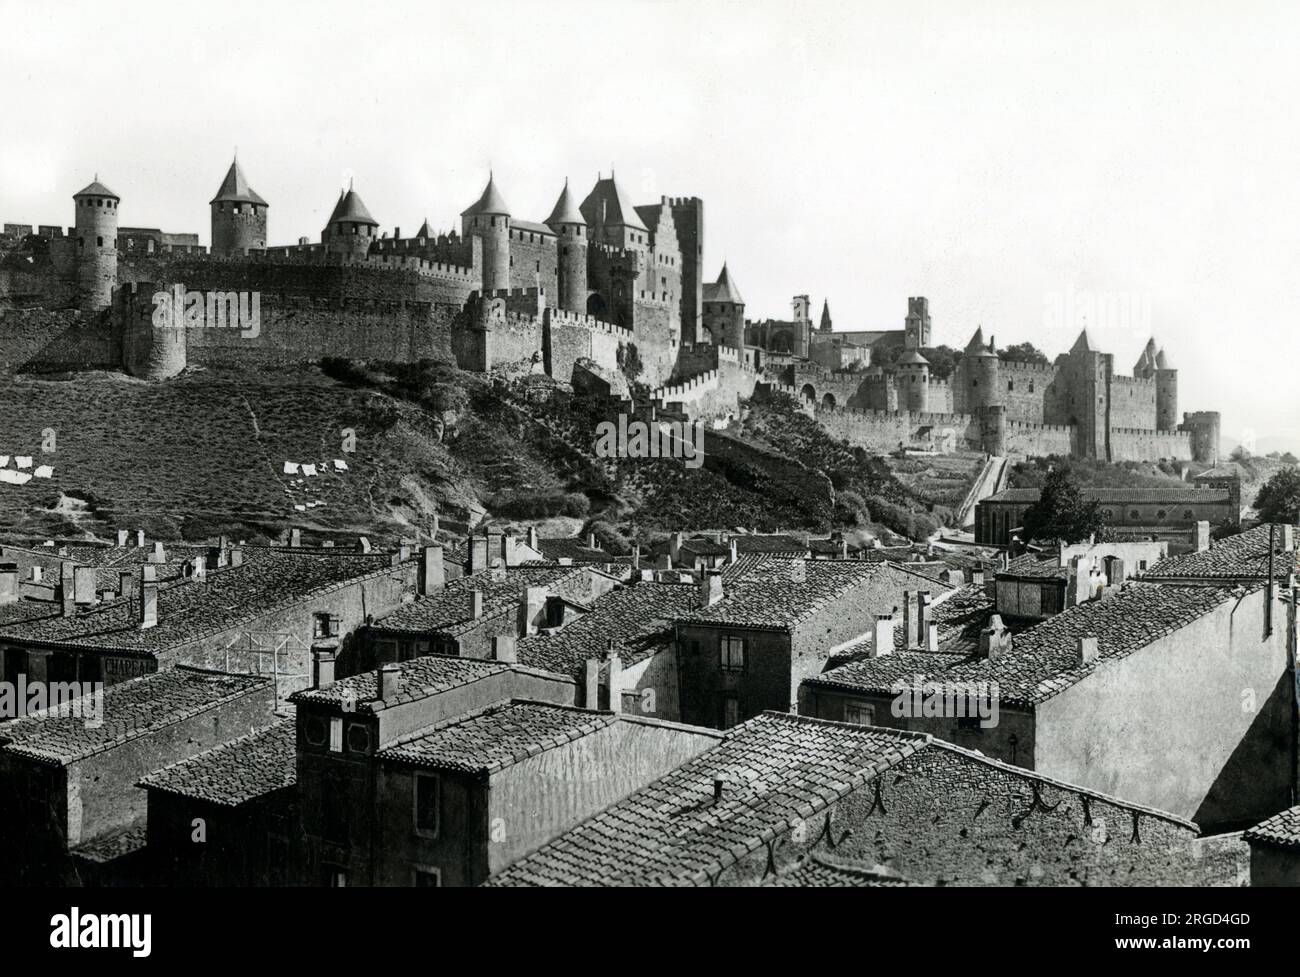 La forteresse Citadelle de Carcassonne, France Banque D'Images